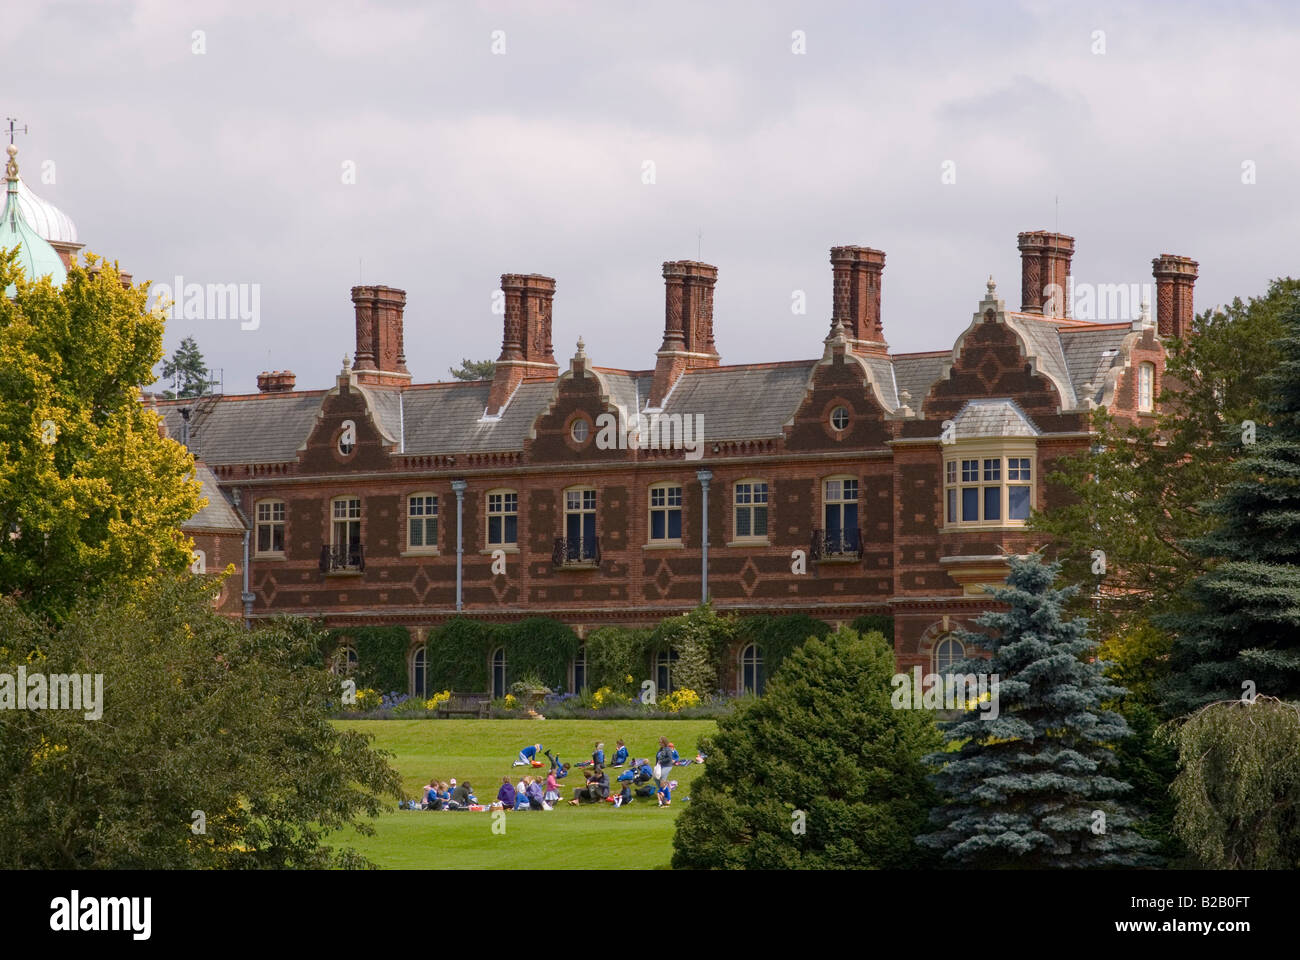 Voyage scolaire à l'extérieur de Sandringham House,Sandringham Estate,Sandringham, Norfolk, Angleterre, Royaume-Uni (retrait de Sa Majesté la Reine) Banque D'Images